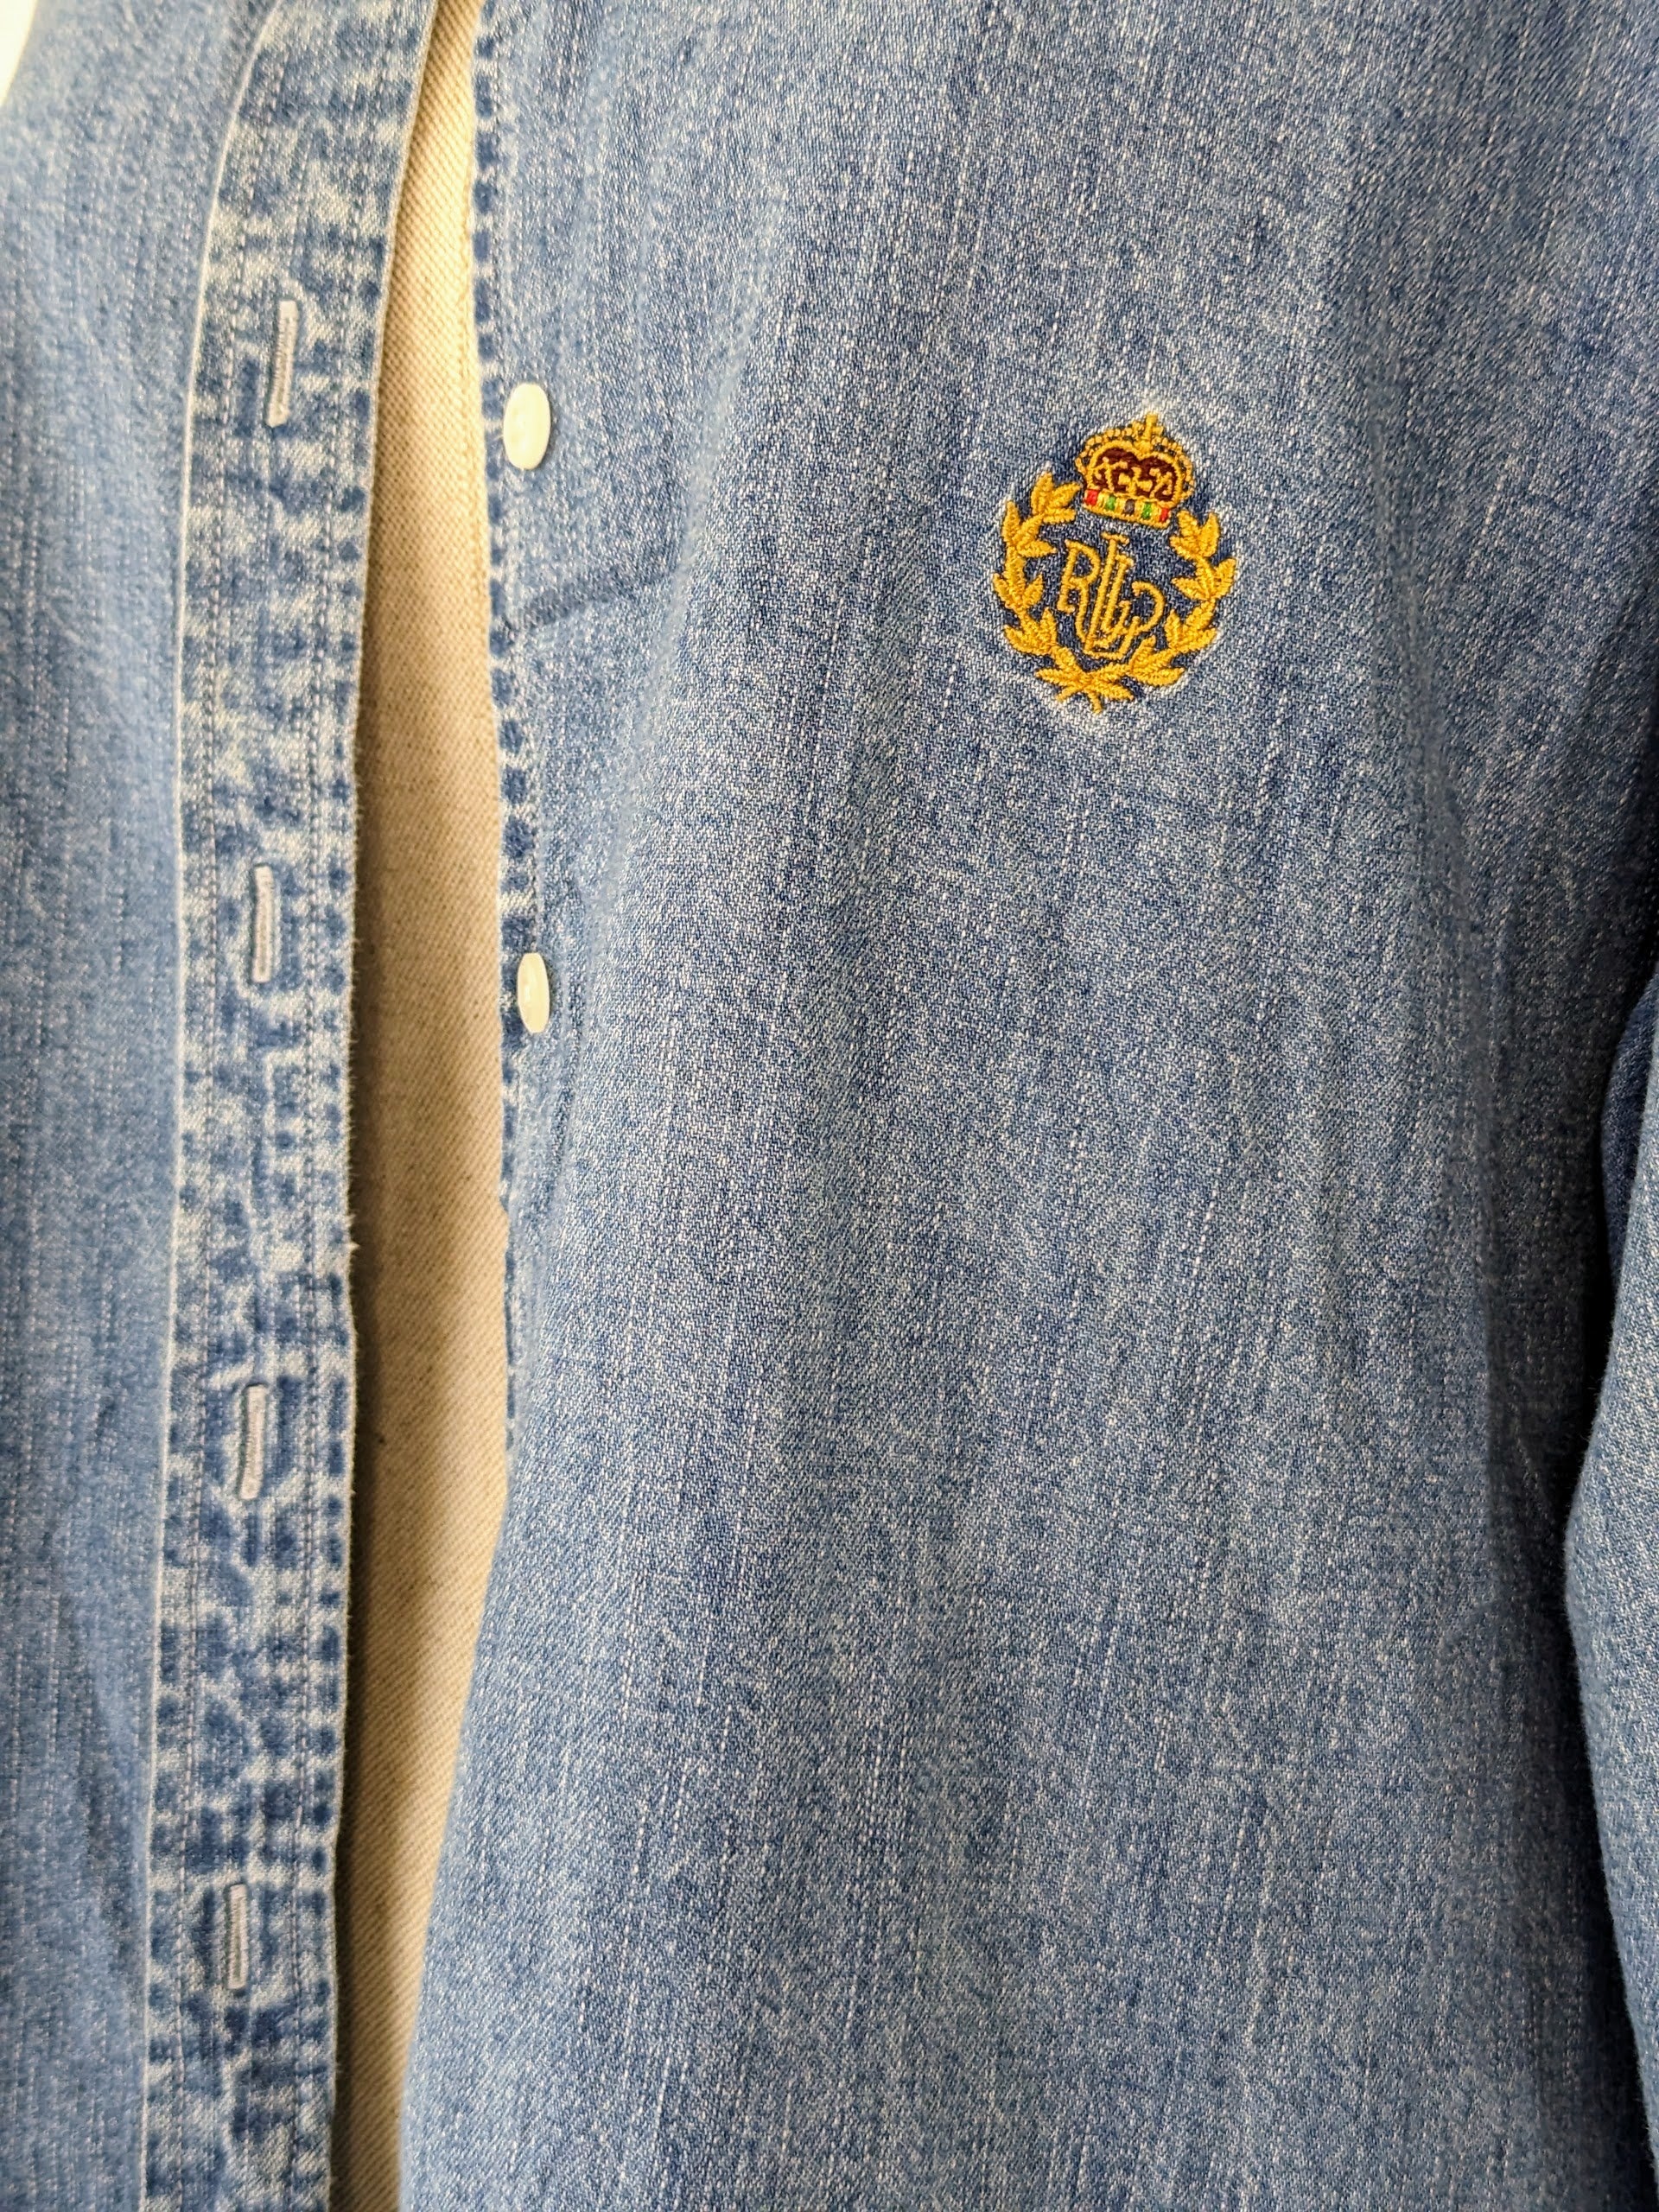 Ralph Lauren Jeans logo on denim shirt